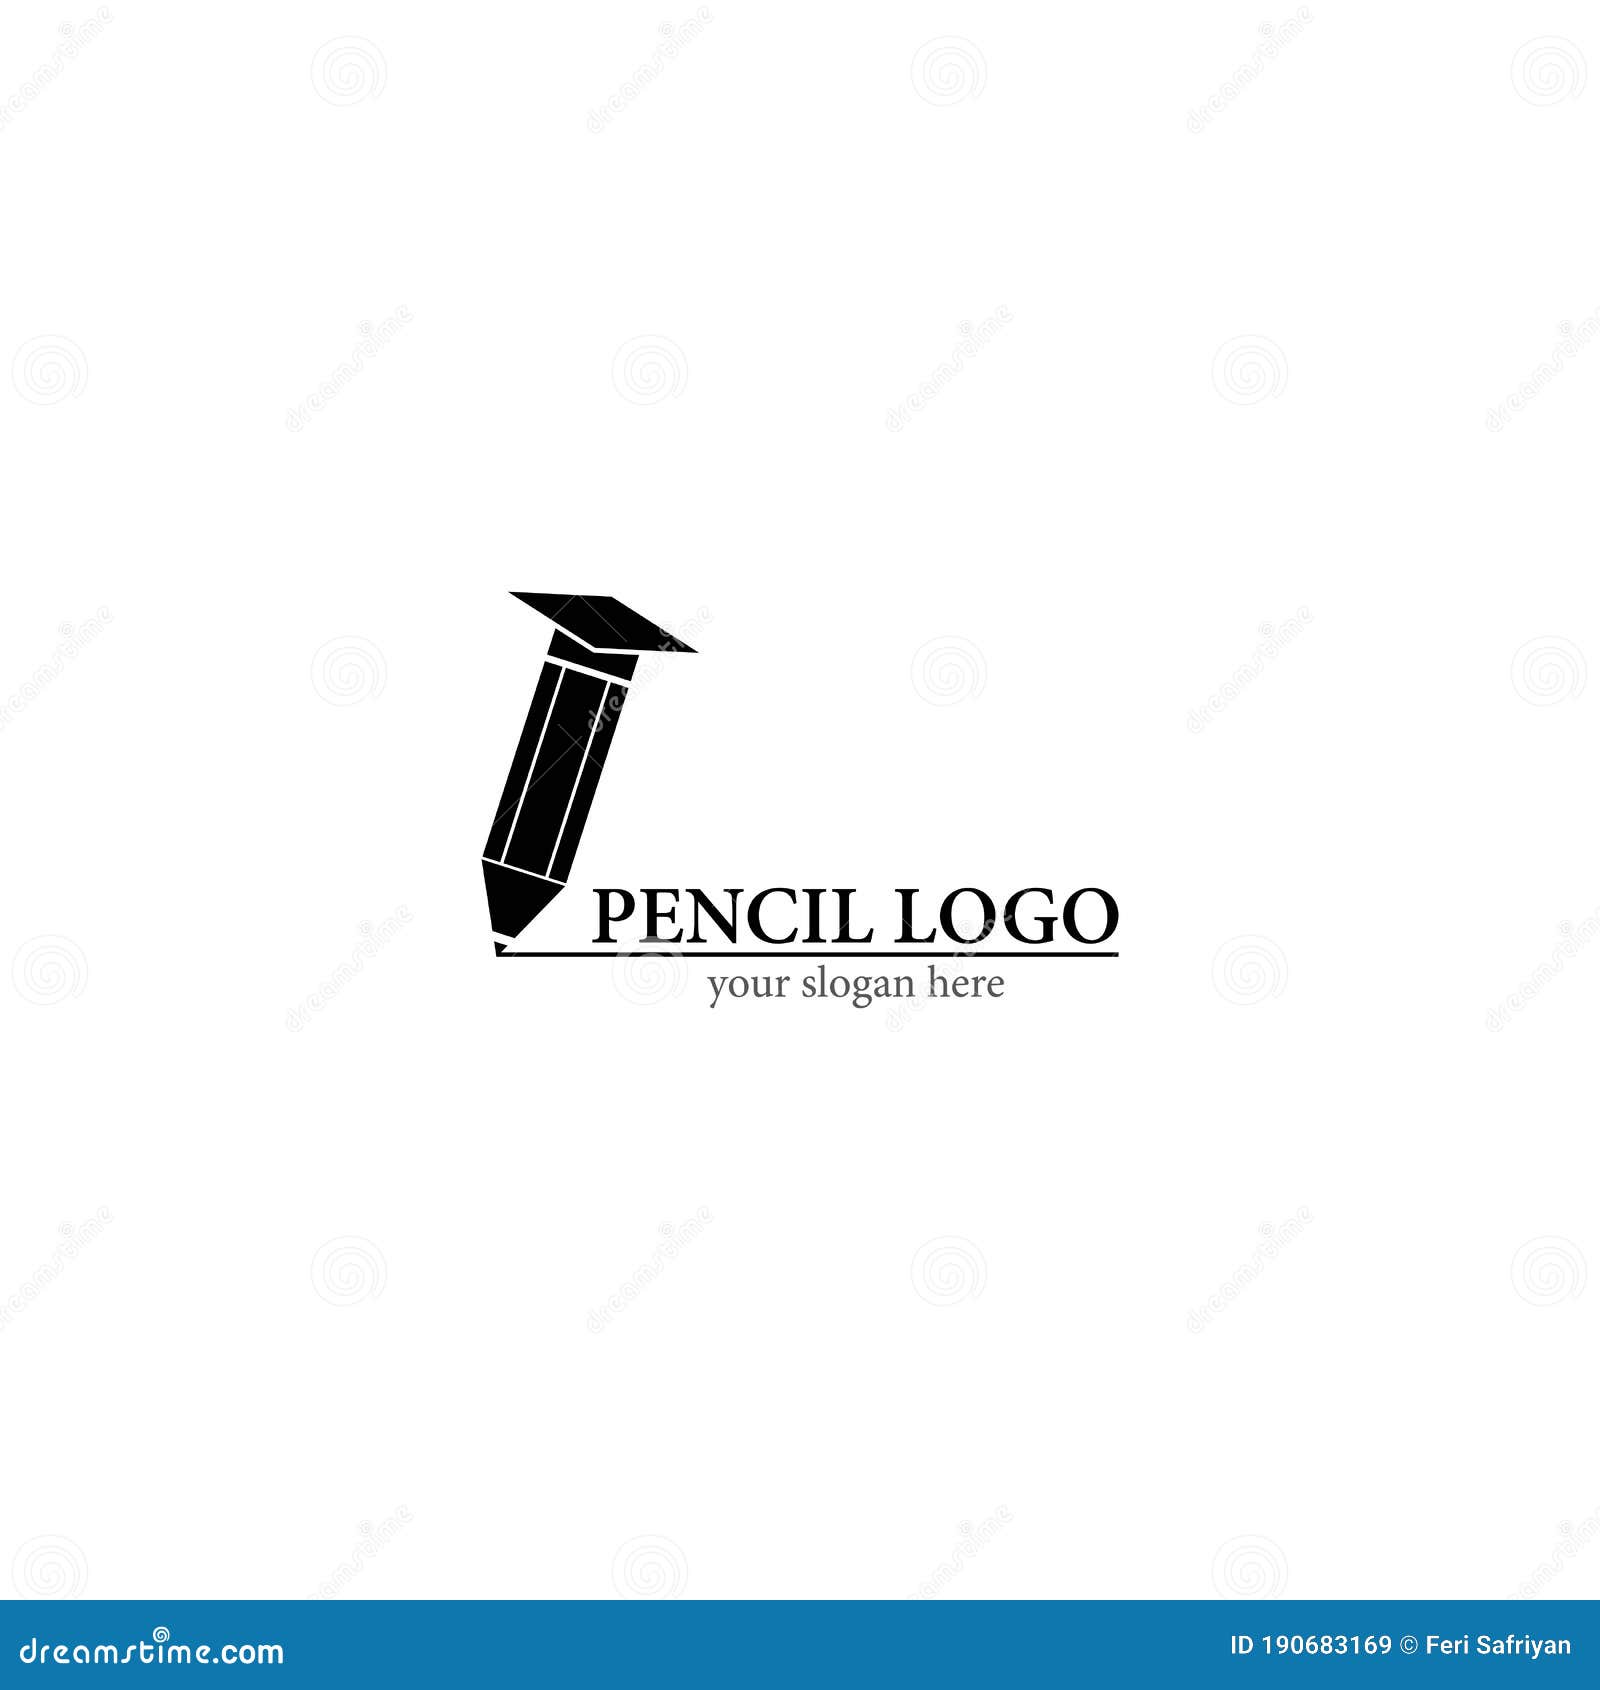 Pencil logo vector stock illustration. Illustration of single - 190683169